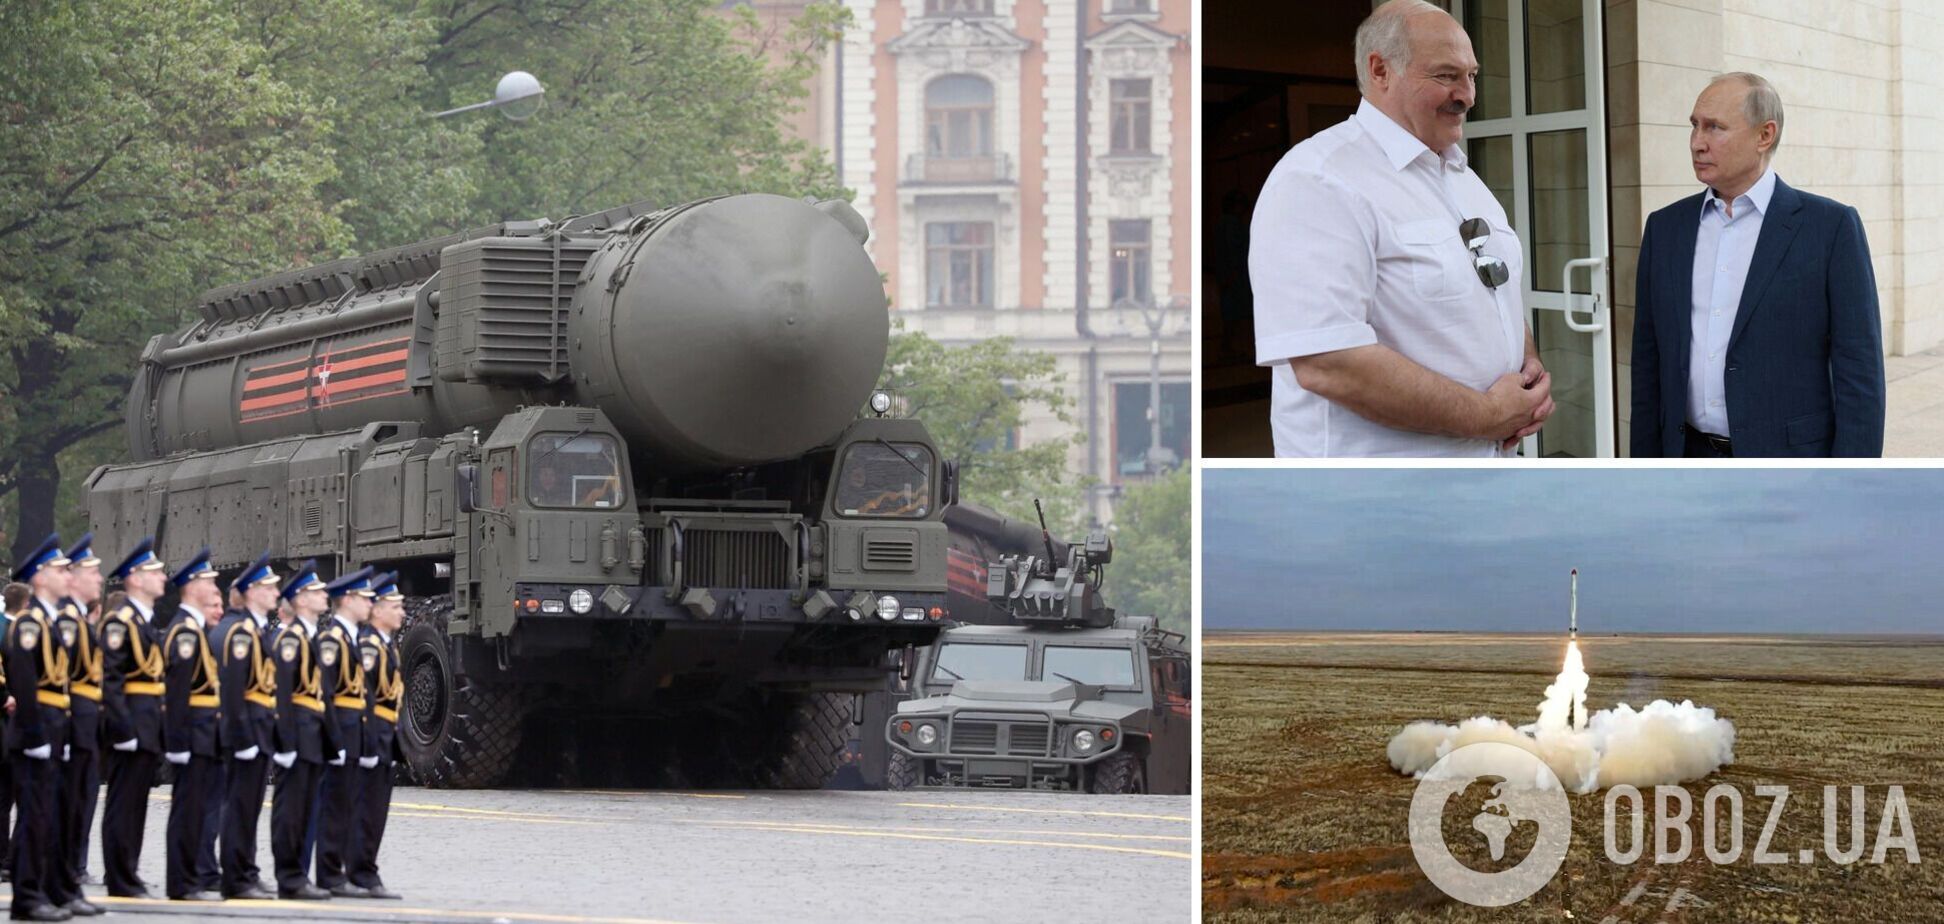 Ні на що не вплине: в ISW оцінили заяву Путіна про ядерну зброю в Білорусі